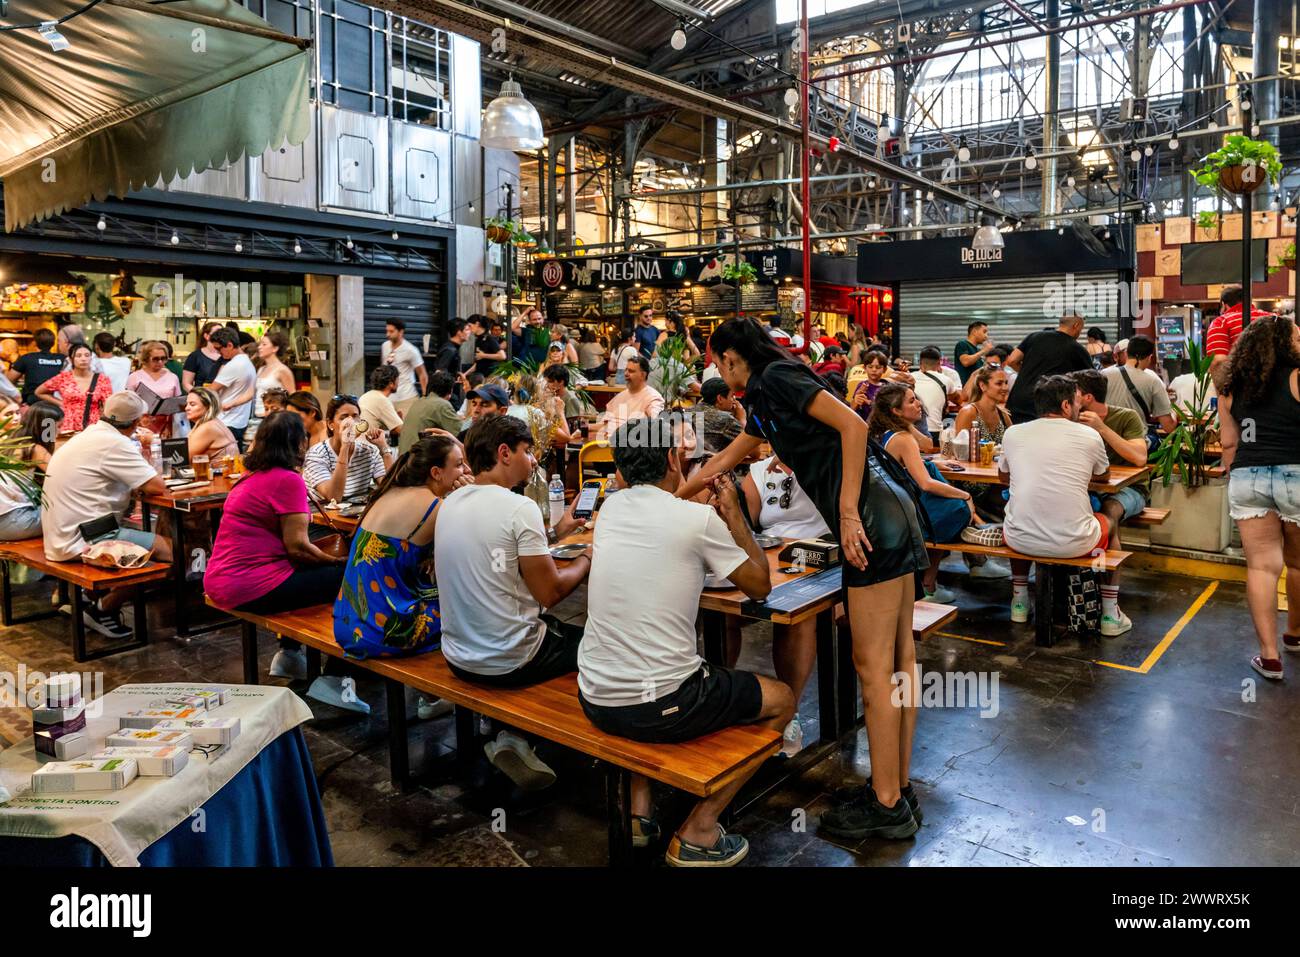 Persone sedute a mangiare in Un caffè nel mercato interno di San Telmo (Mercado de San Telmo), Buenos Aires, Argentina. Foto Stock